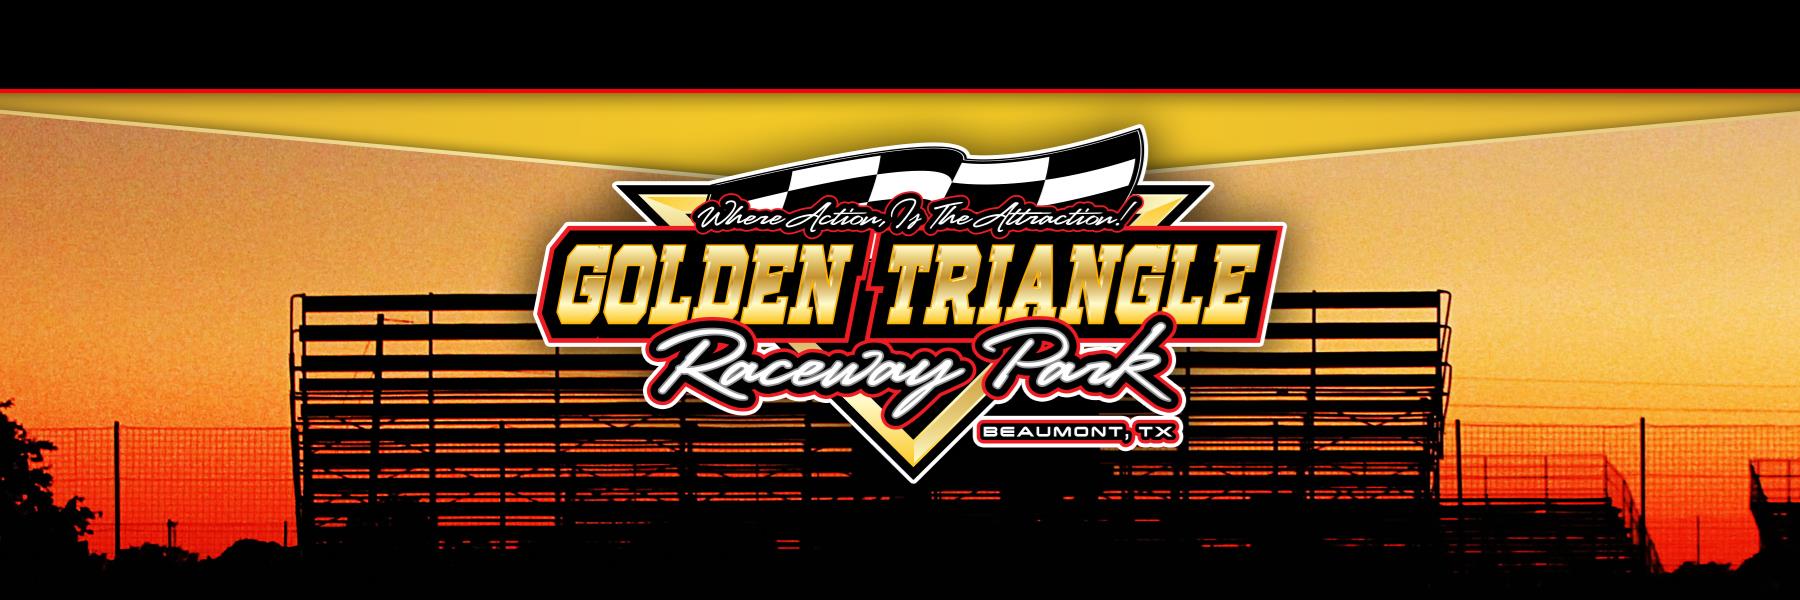 8/17/2019 - Golden Triangle Raceway Park